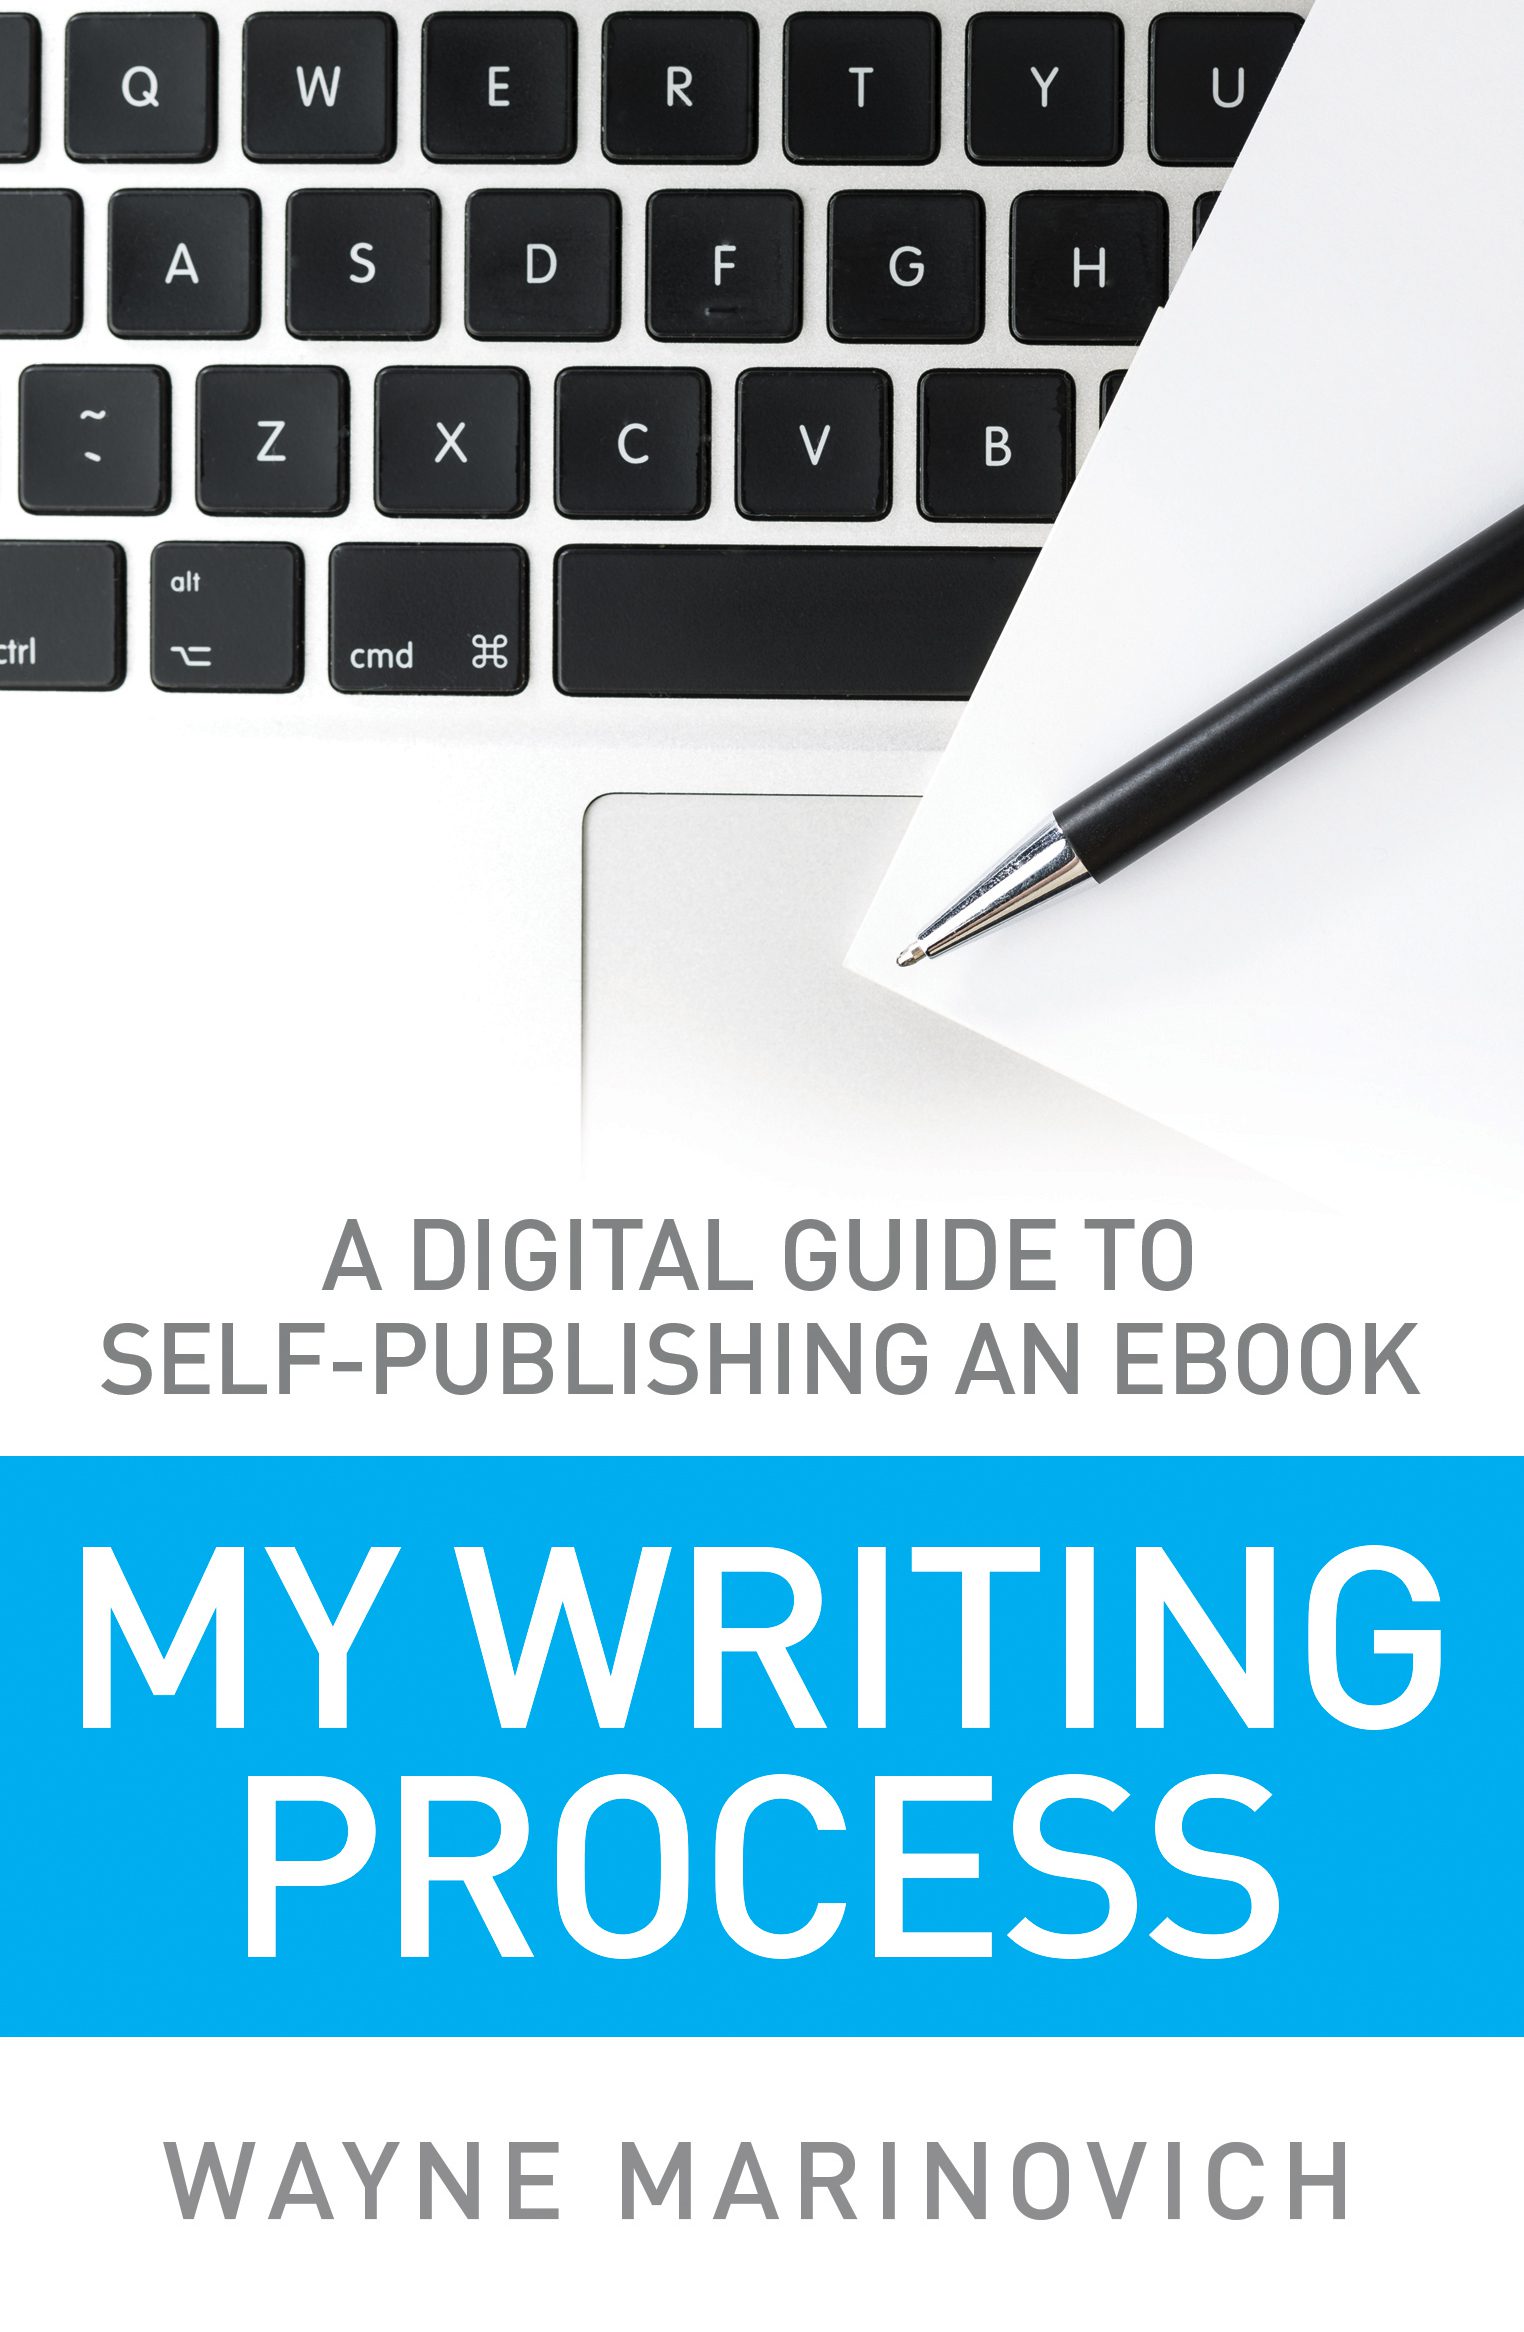 "My Writing Process - Wayne Marinovich Books"